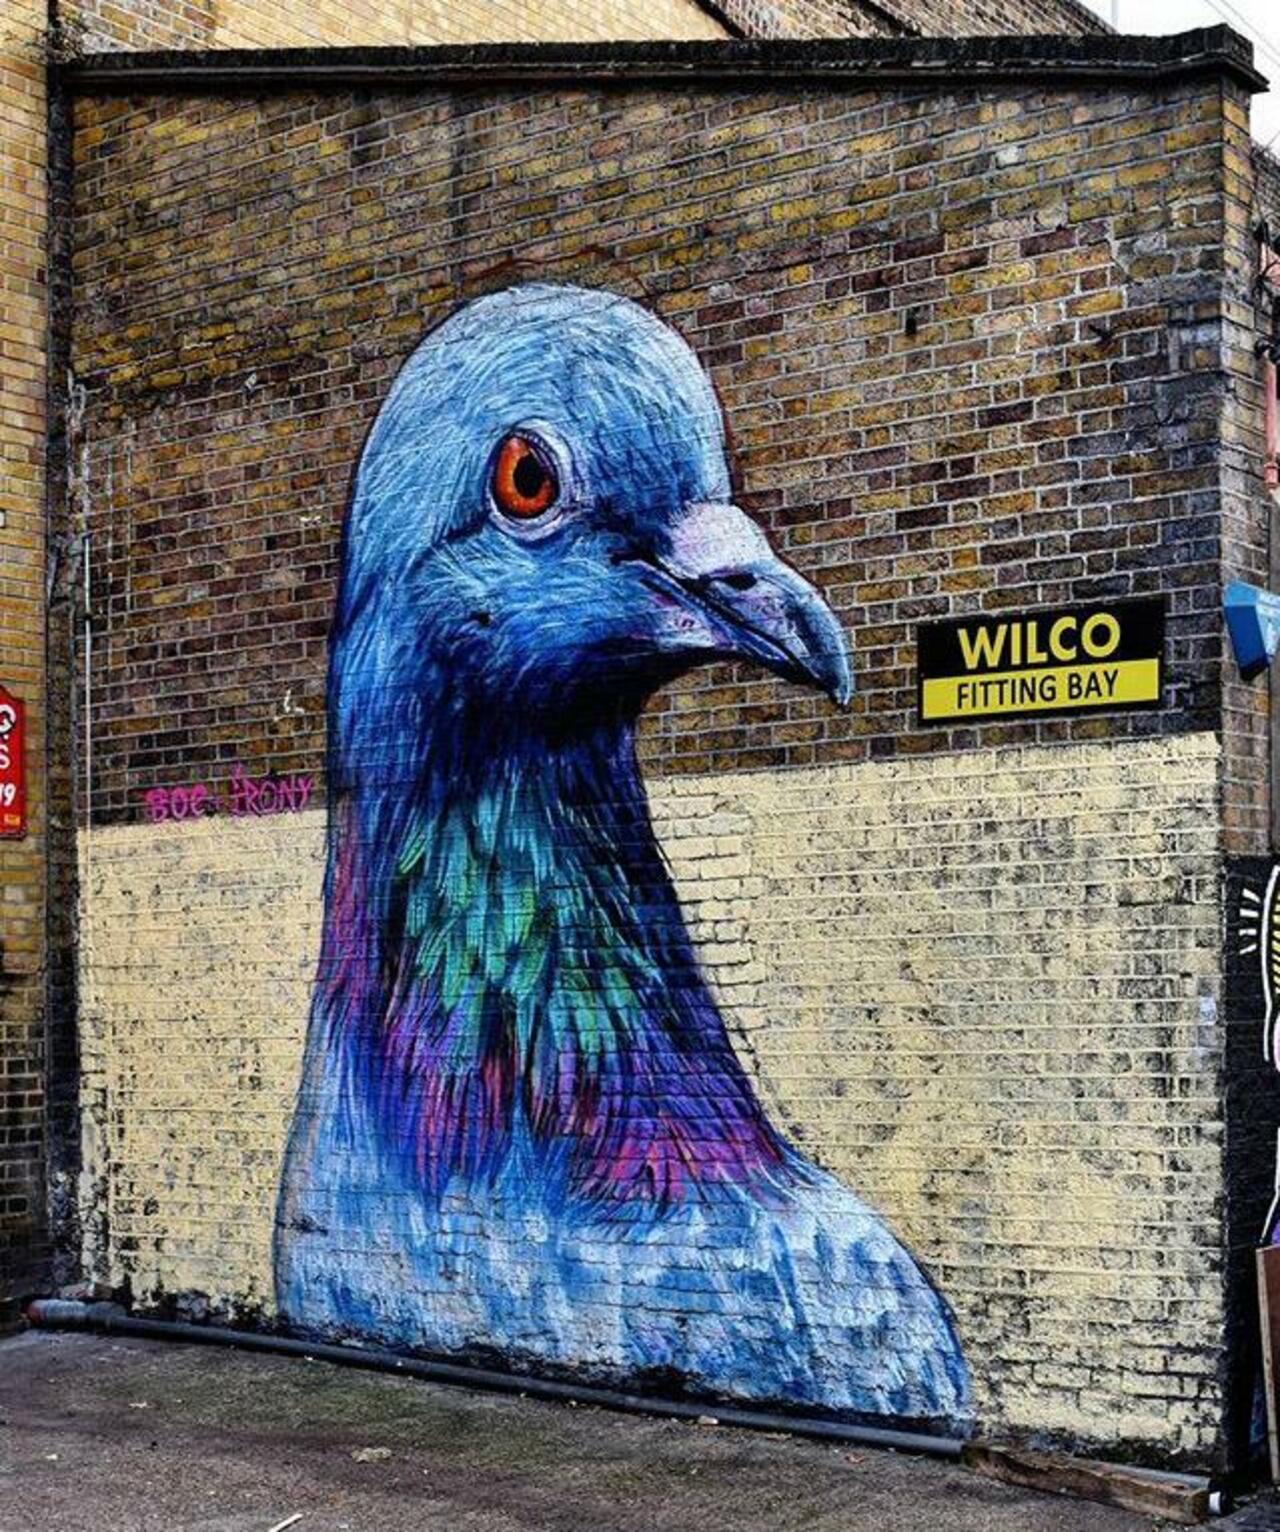 Street Art by Placee Boe & whoamirony in London 

#art #graffiti #mural #streetart http://t.co/4JNwuMZxOK